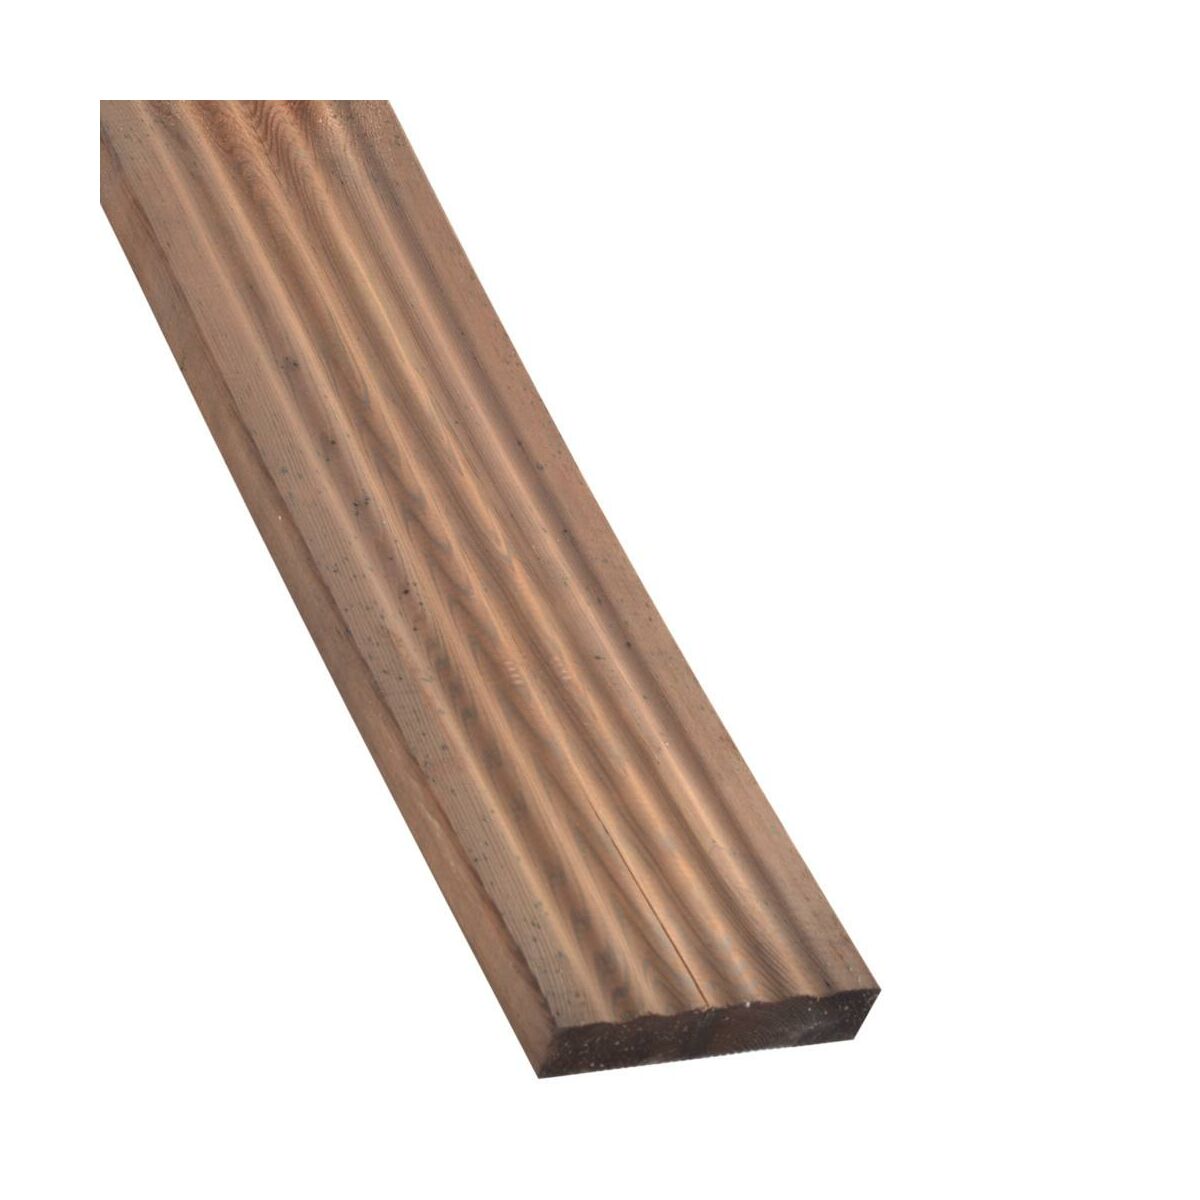 Deska tarasowa drewniana Nive 12x240x2.5 cm Sosna Naterial